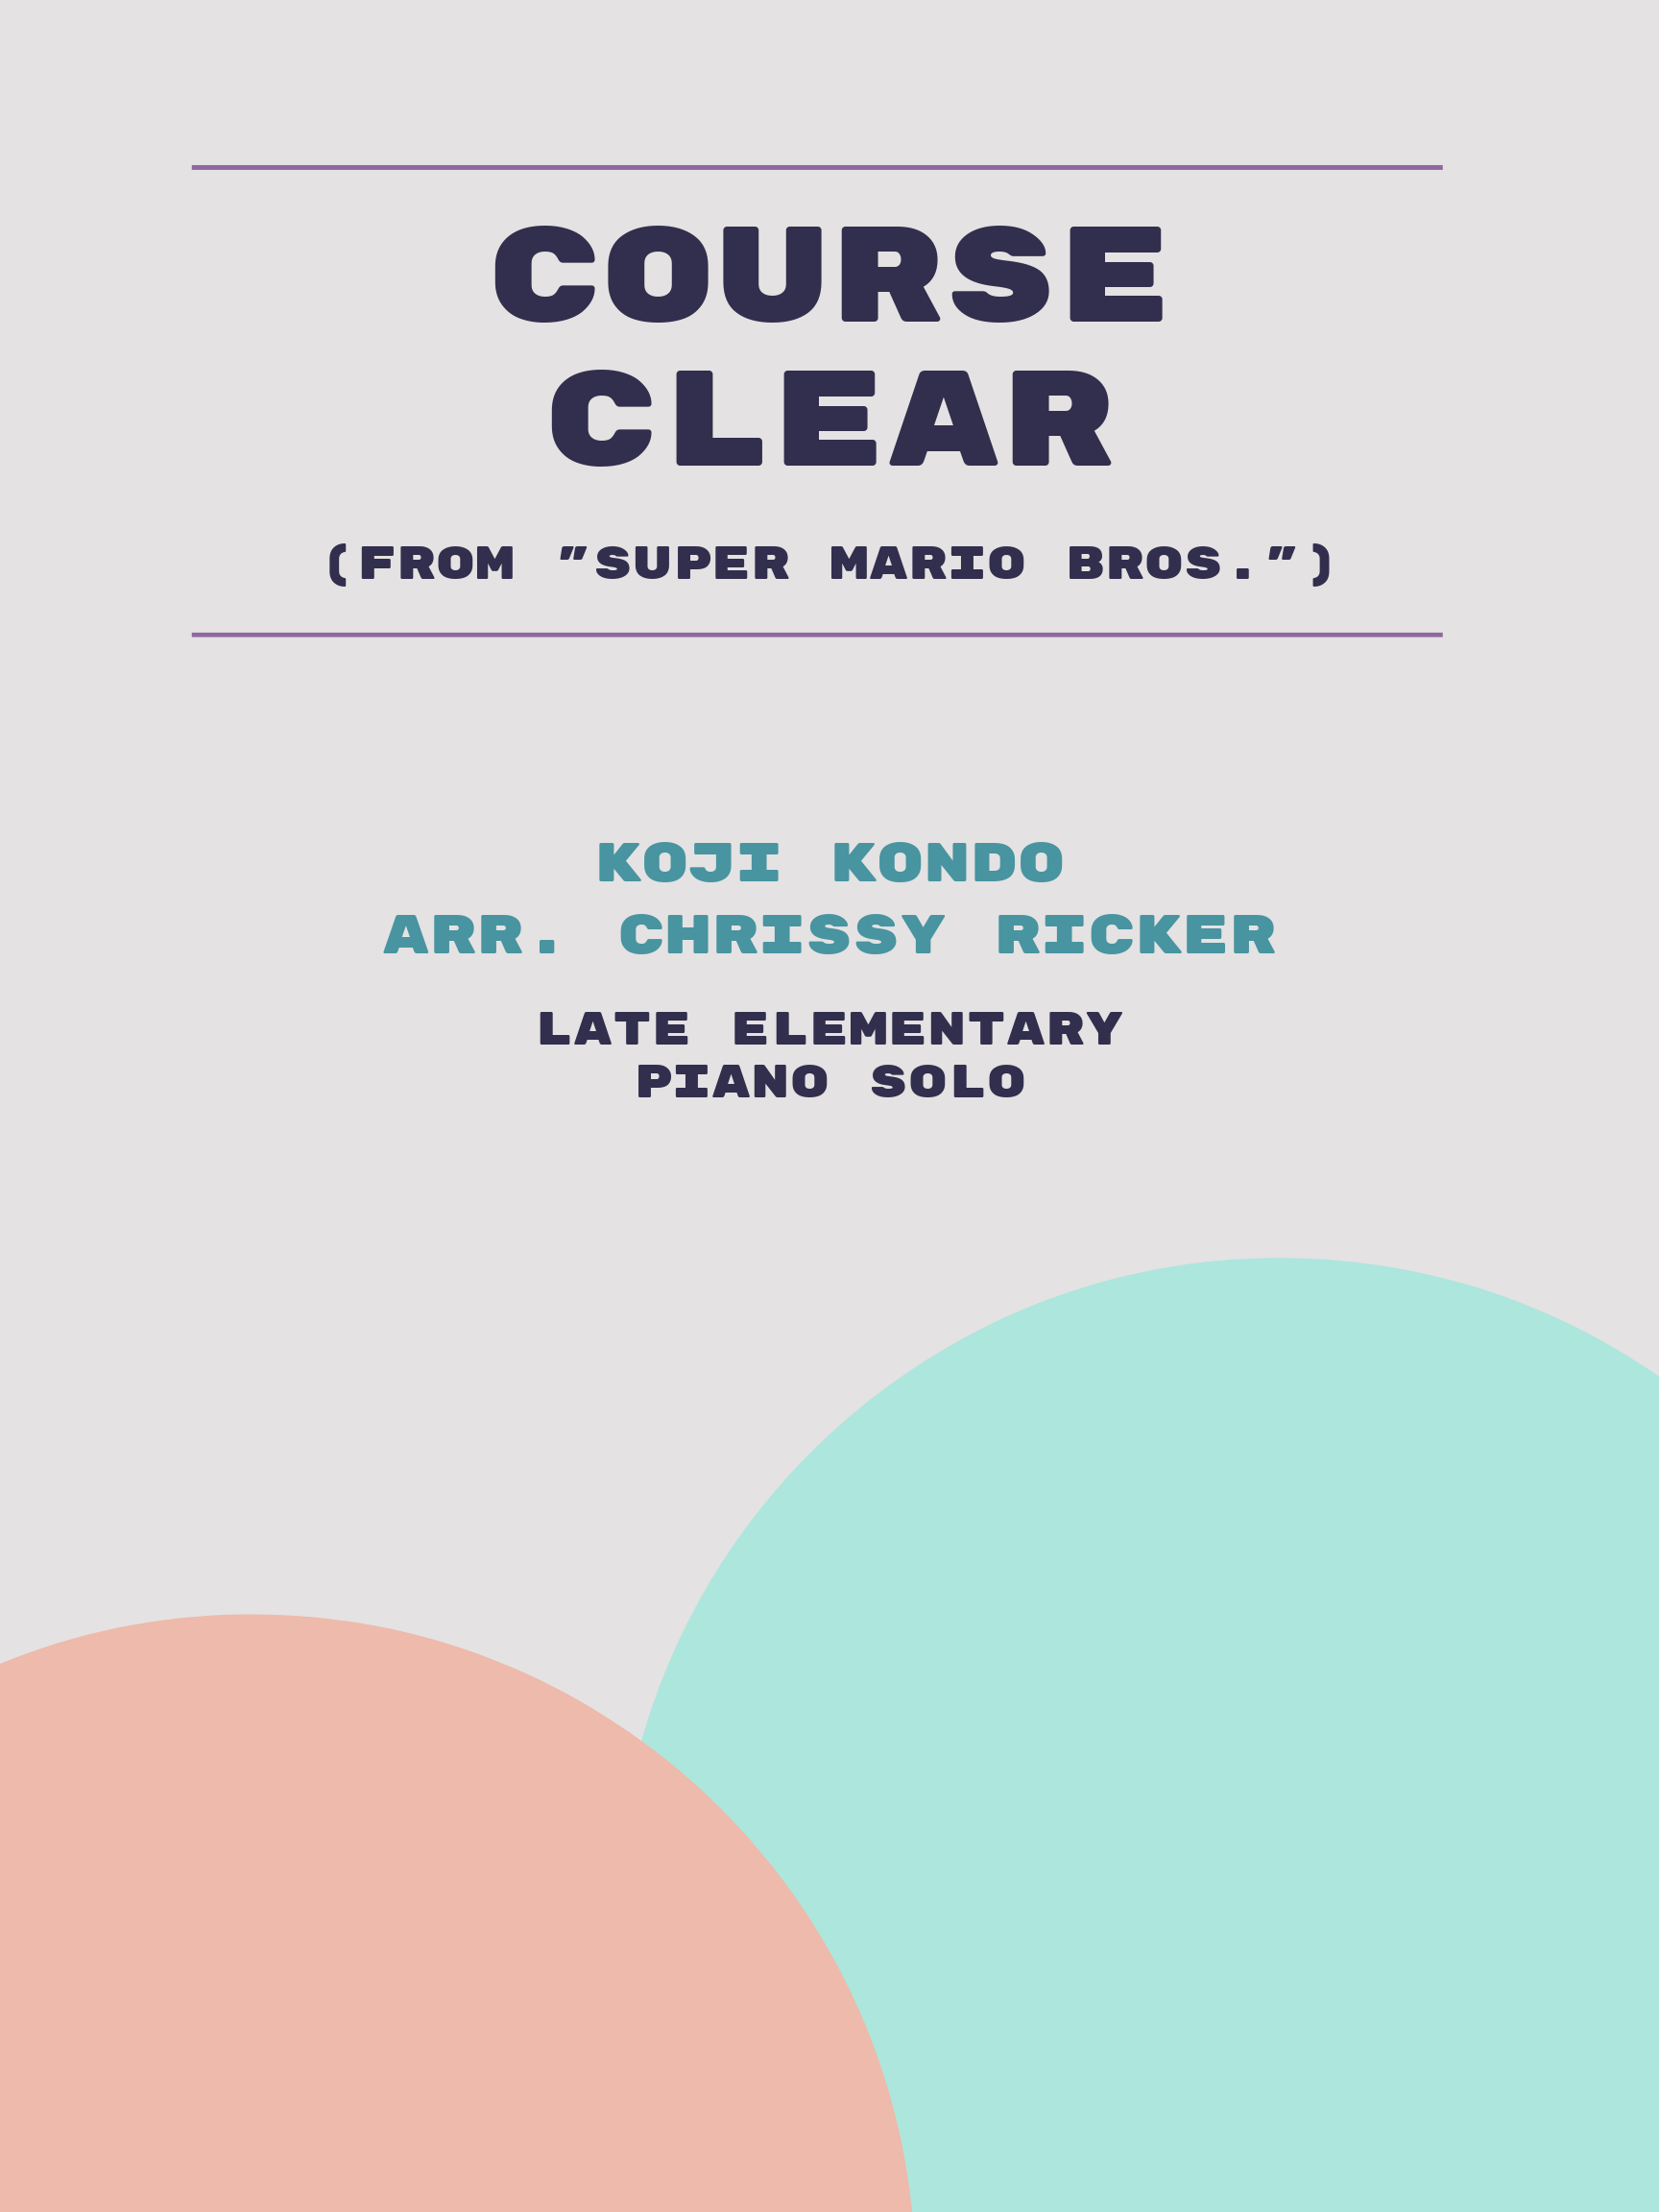 Course Clear by Koji Kondo